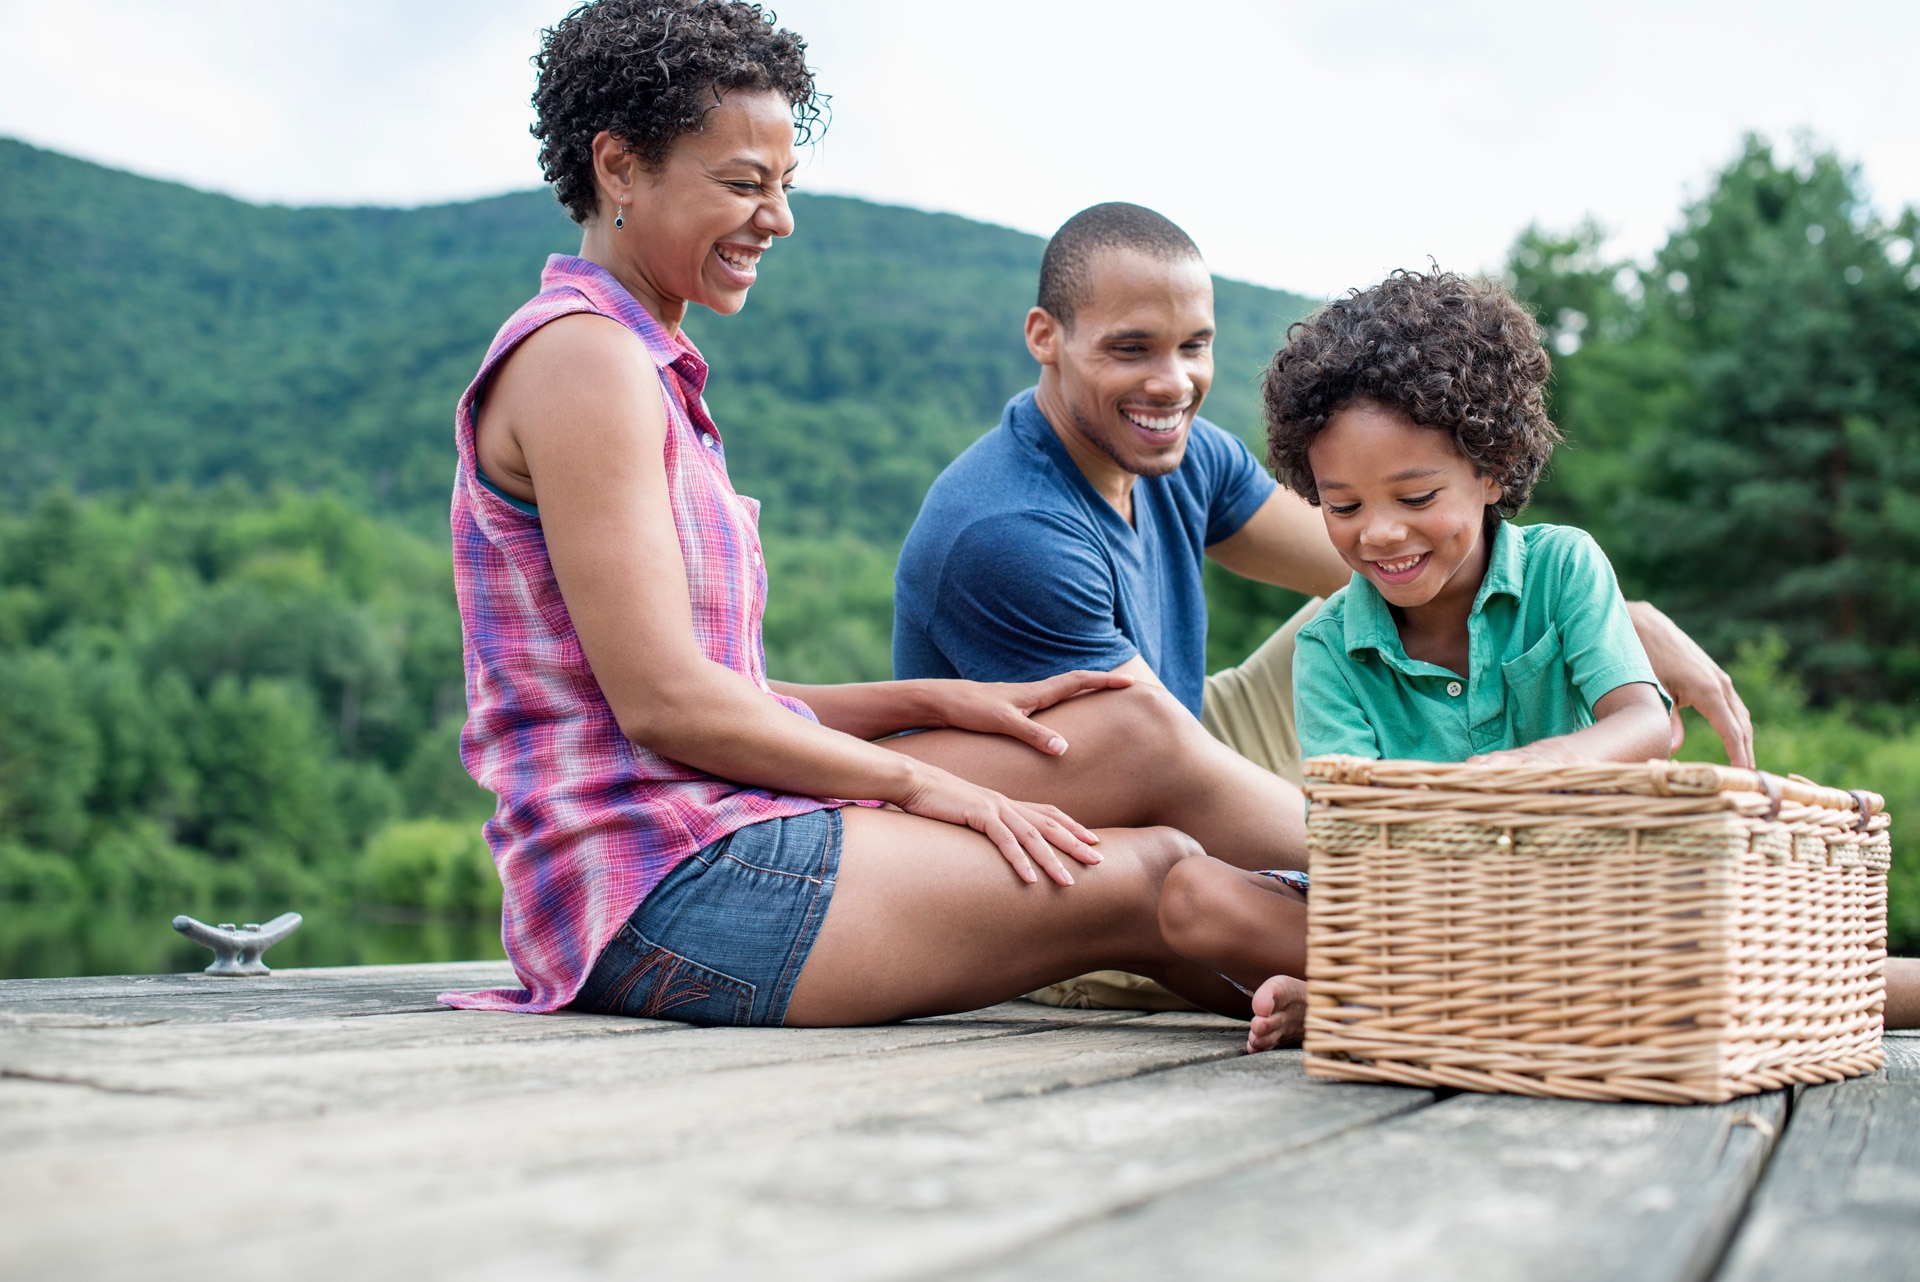 Padre, madre e hijo hacen un pícnic de verano junto al lago.